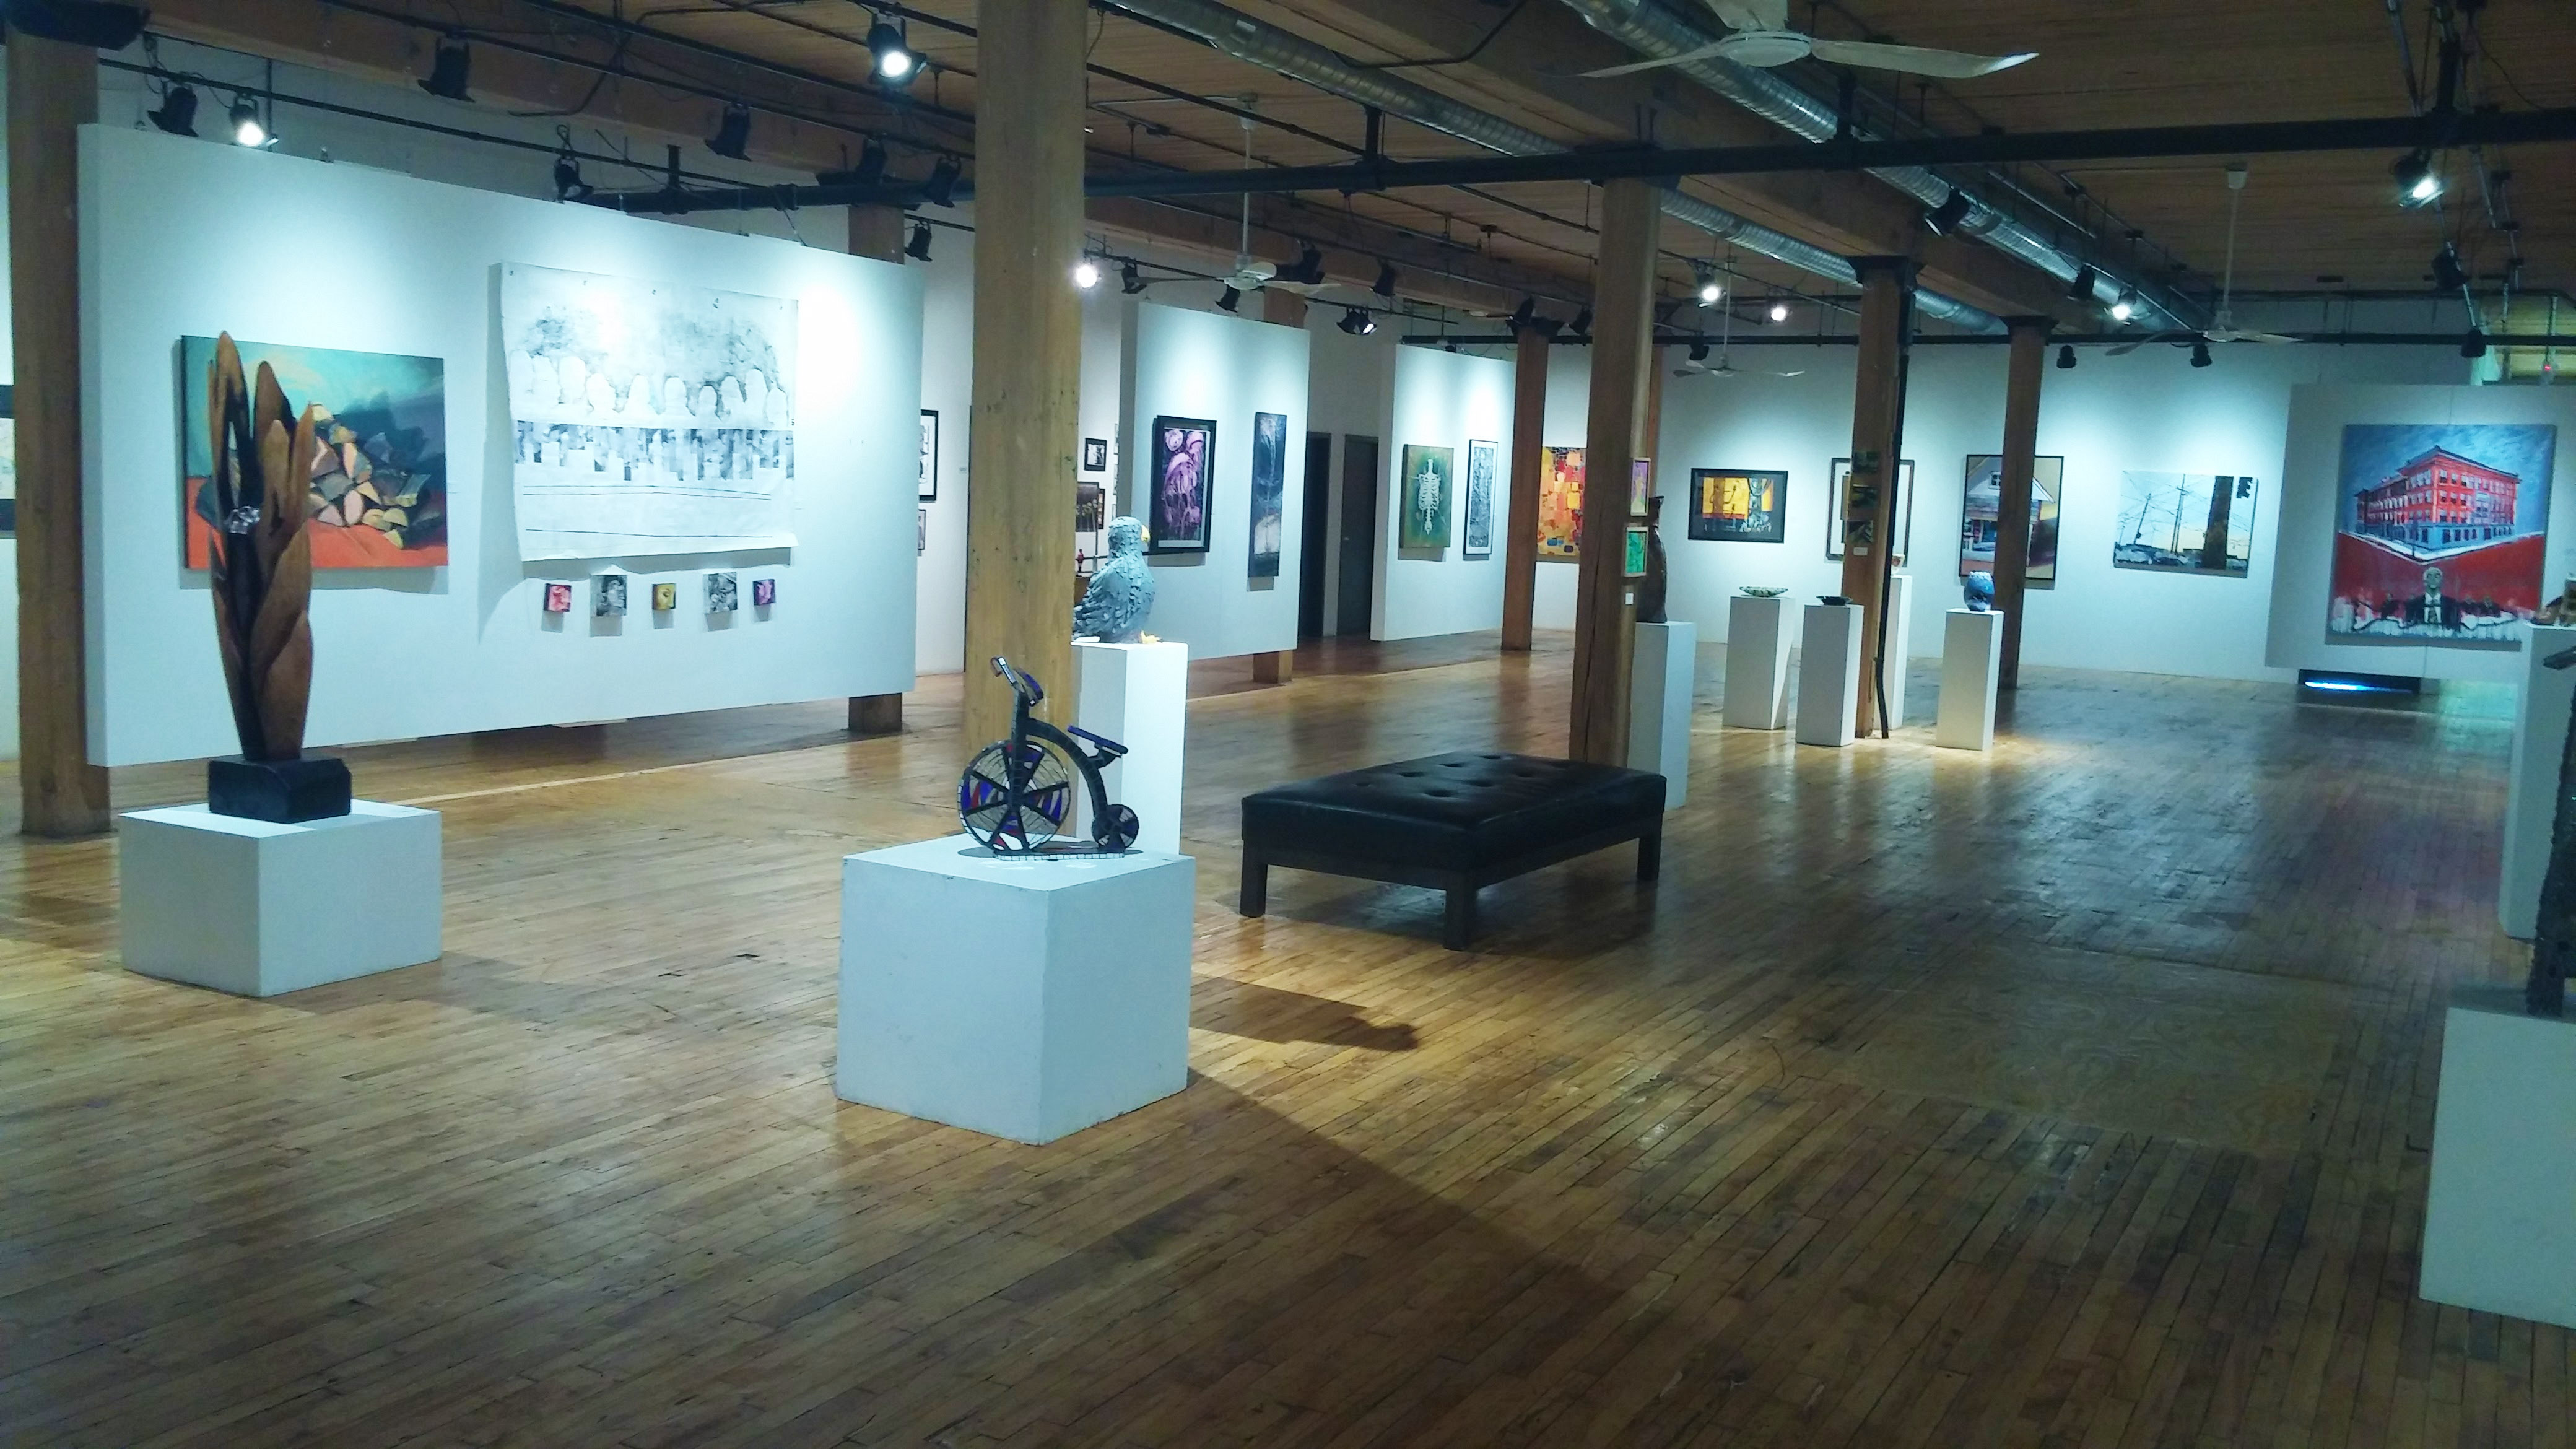 Exhibition at Bridgeport Art Center